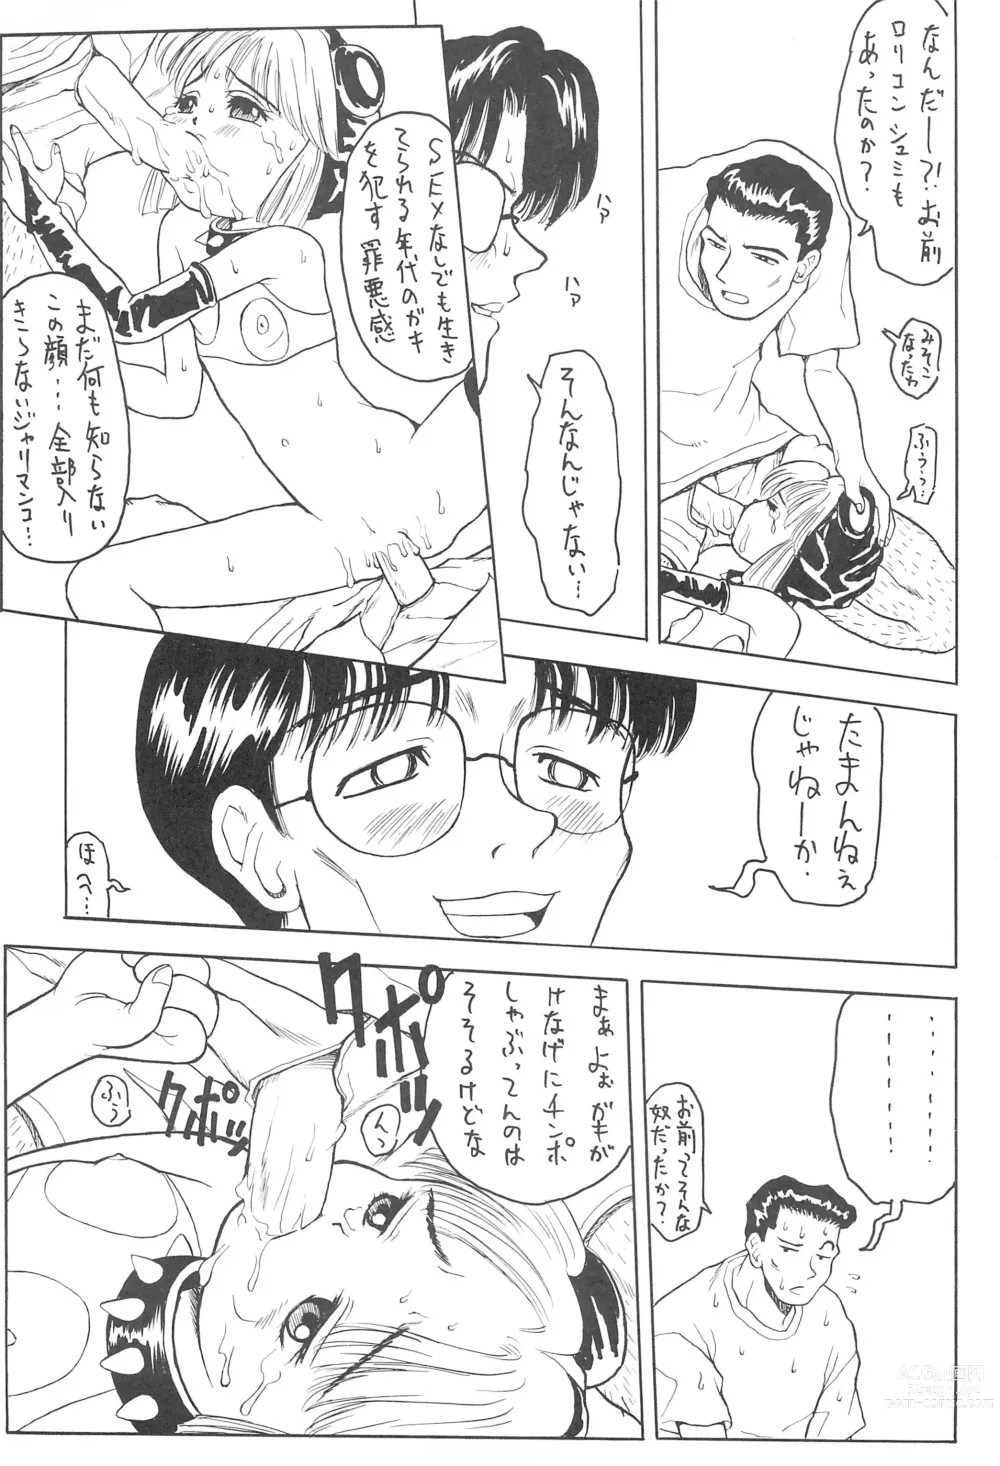 Page 17 of doujinshi Naninuneno